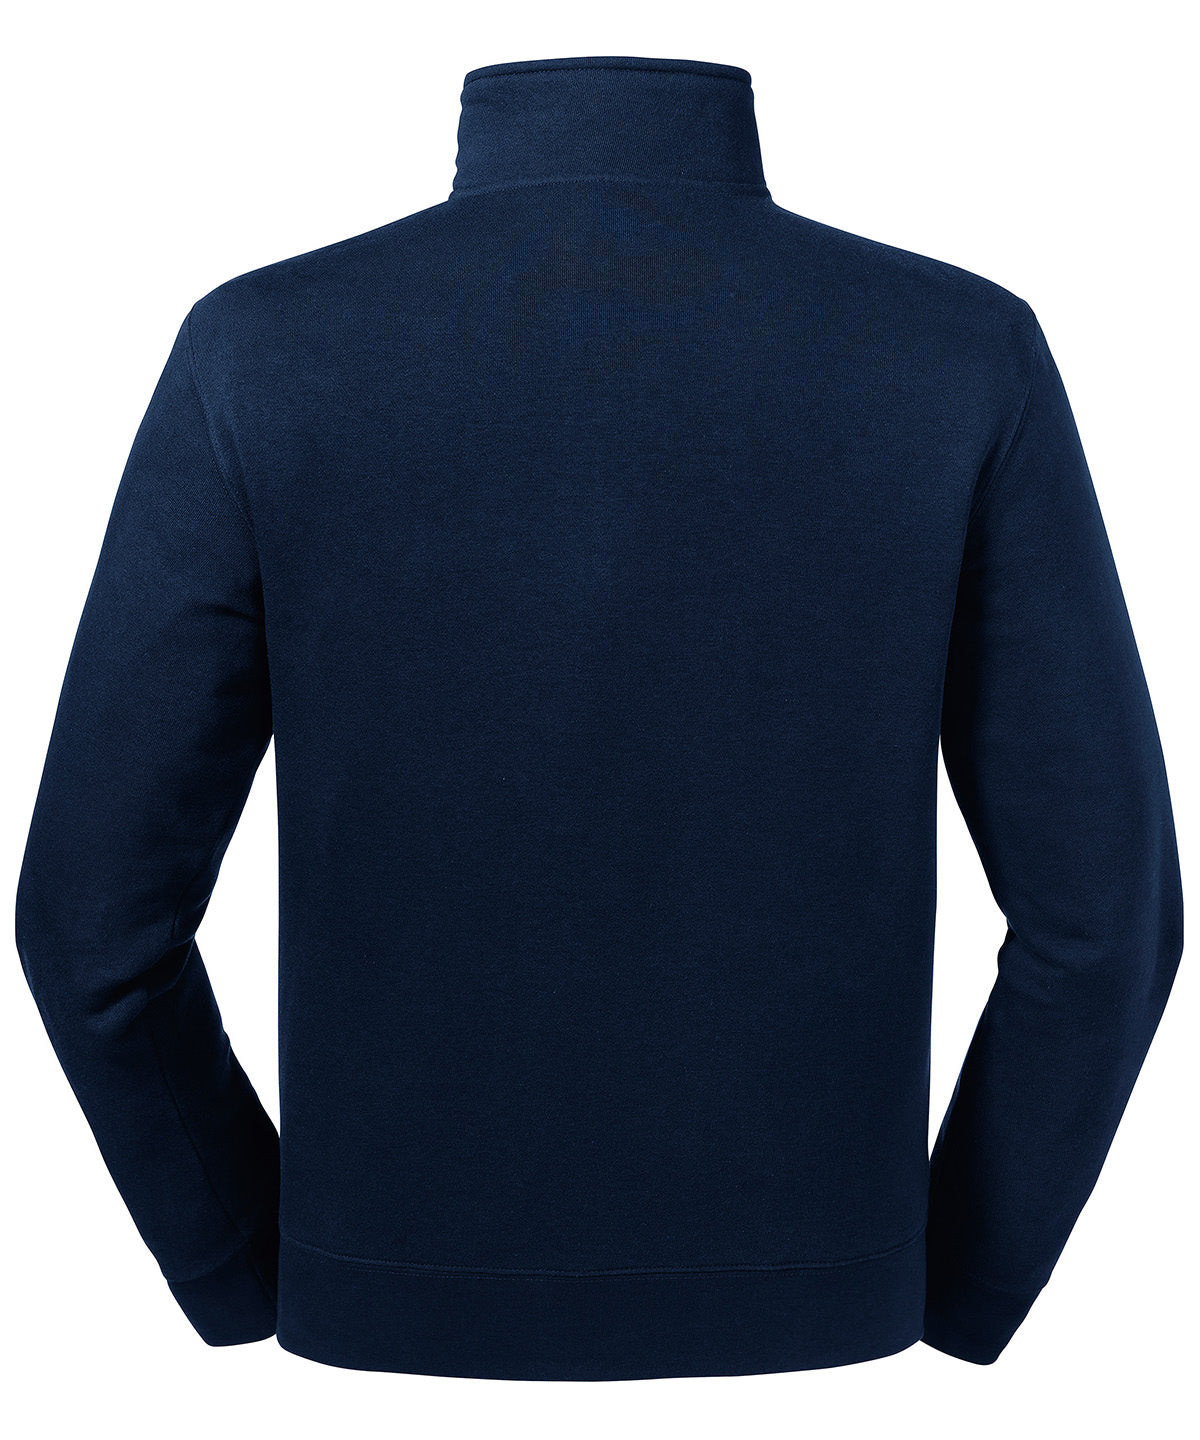 Authentic ¼ zip Sweatshirt